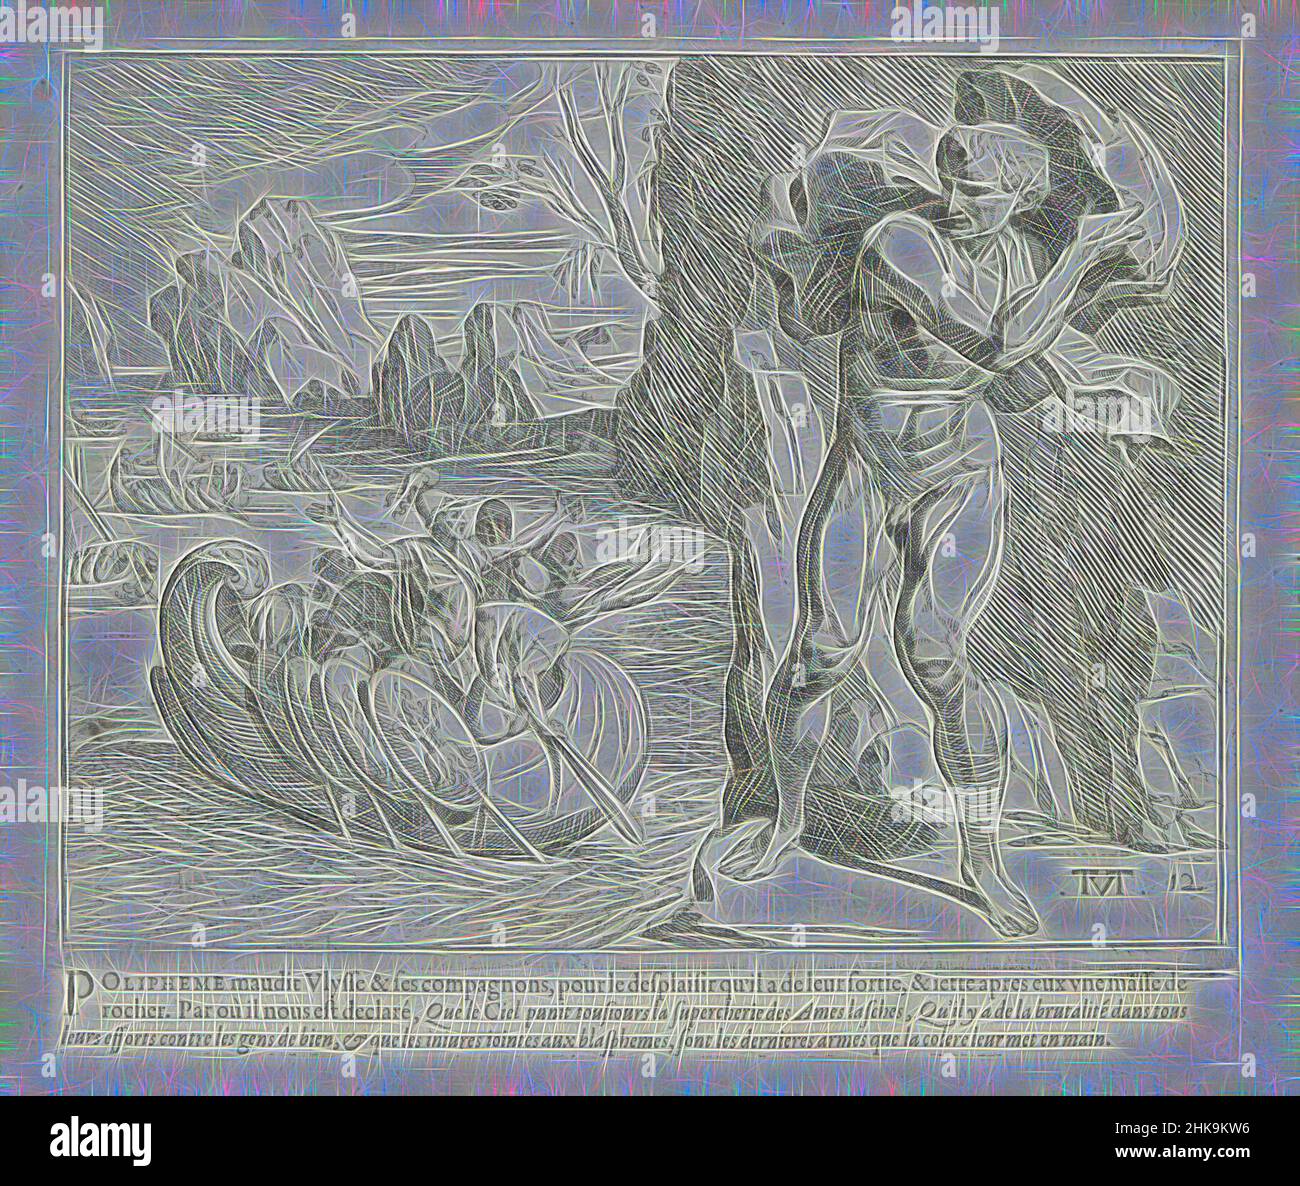 Inspiré par Polyphemus jette un rocher sur le navire d'Odysseus, les travaux d'Ulysse, les œuvres d'Odysseus, le géant Polyphemus jette un rocher sur le navire de départ d'Odysseus. L'imprimé fait partie d'un album., imprimeur: Theodoor van Thulden, dessinateur intermédiaire: Theodoor van Thulden, Paris, 1633, papier, réimaginé par Artotop. L'art classique réinventé avec une touche moderne. Conception de lumière chaleureuse et gaie, de luminosité et de rayonnement de lumière. La photographie s'inspire du surréalisme et du futurisme, embrassant l'énergie dynamique de la technologie moderne, du mouvement, de la vitesse et révolutionne la culture Banque D'Images